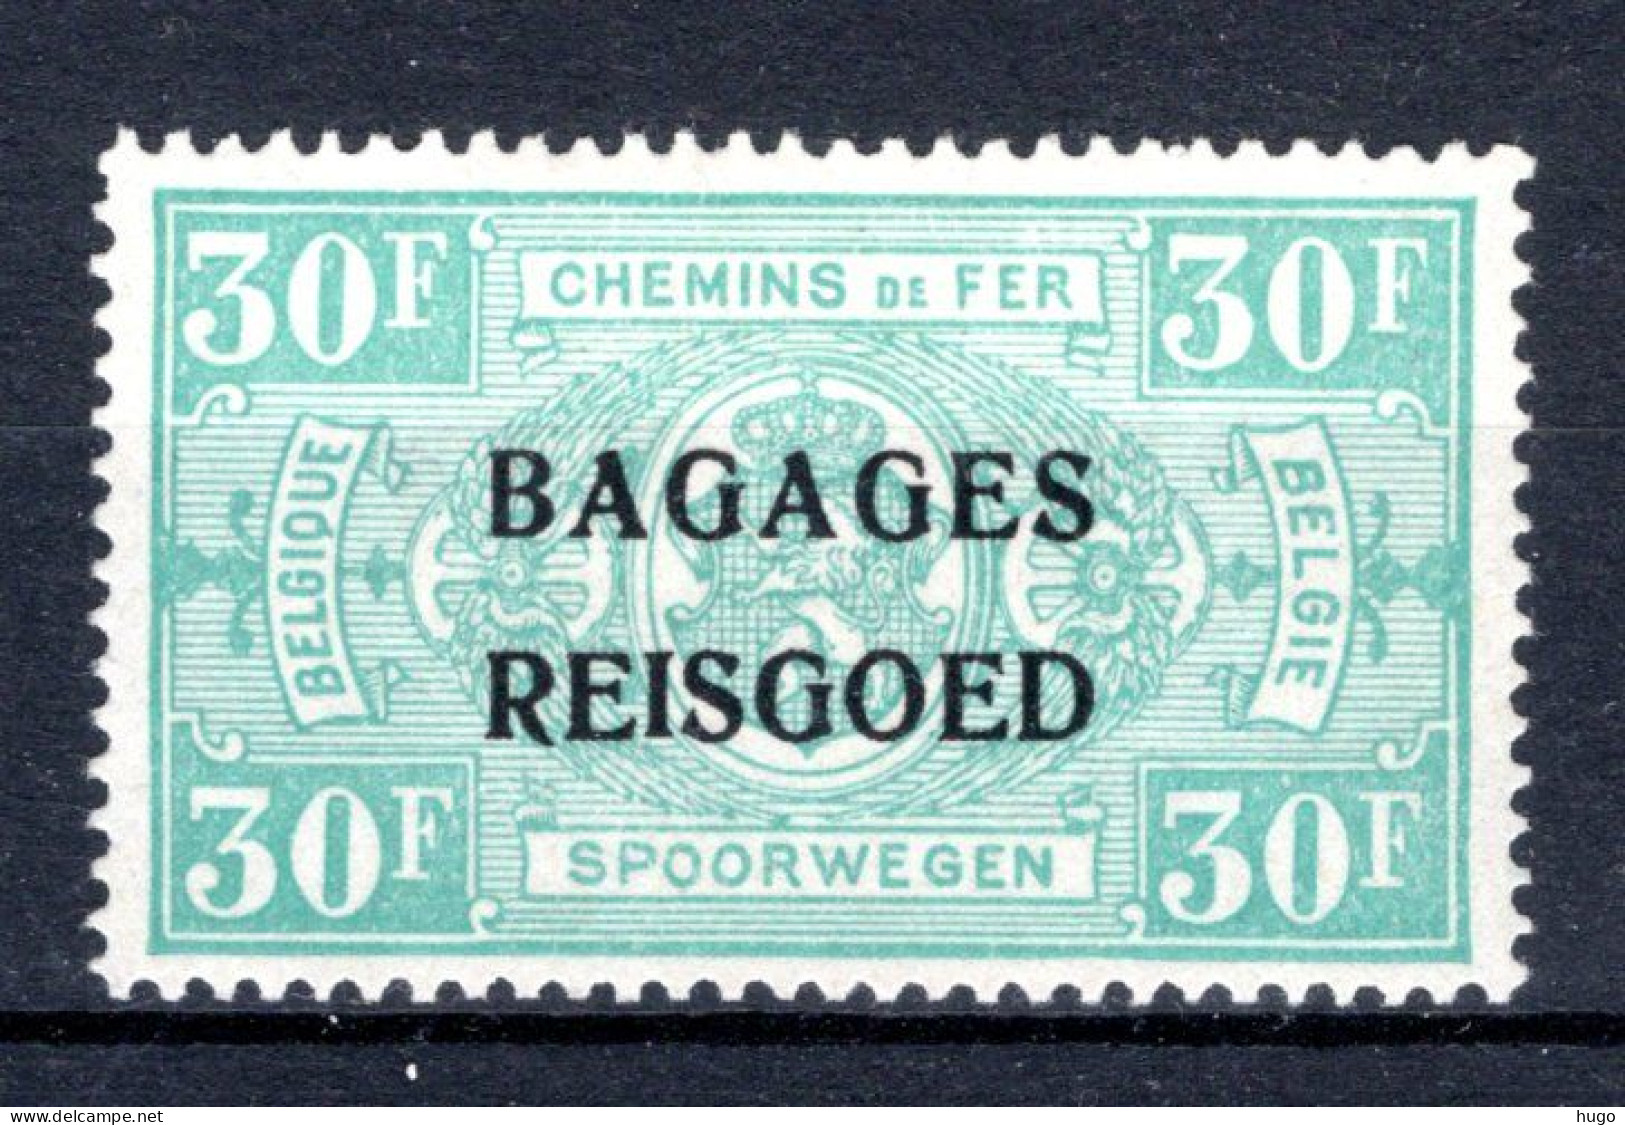 BA21 MH* 1935 - Spoorwegzegels Met Opdruk "BAGAGES - REISGOED" - Sot - Reisgoedzegels [BA]